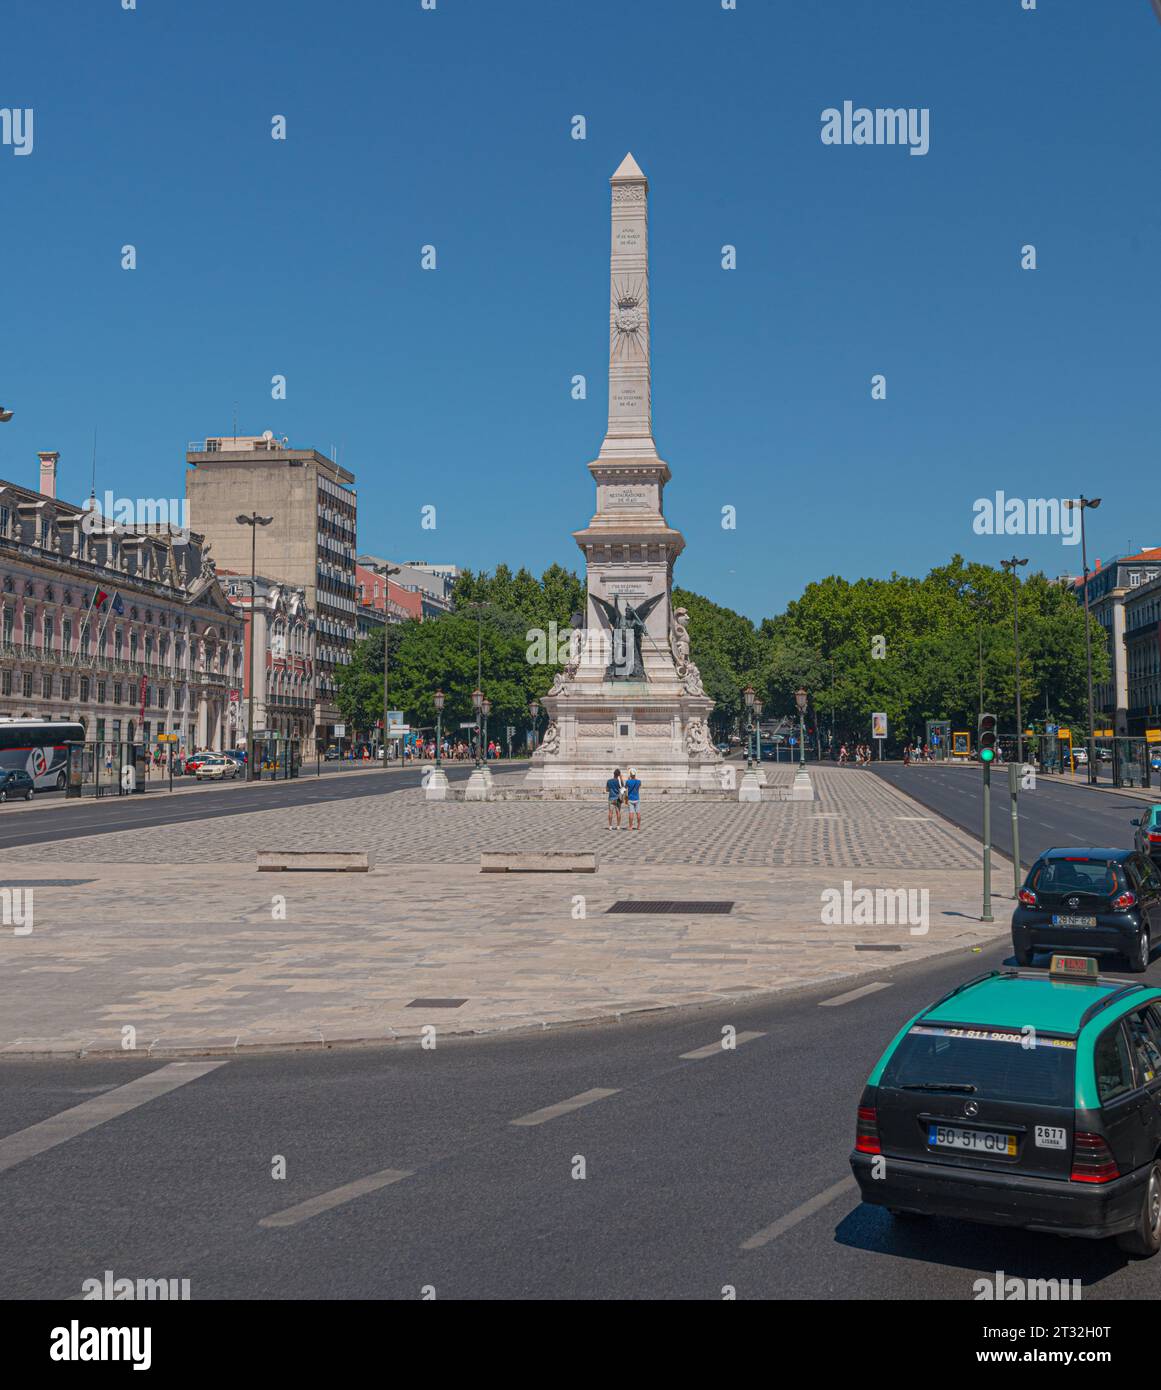 Lisboa, Portugal - 24. Juli 2016: Monumento aos Restauradores auf dem Platz Restauradores. Stockfoto